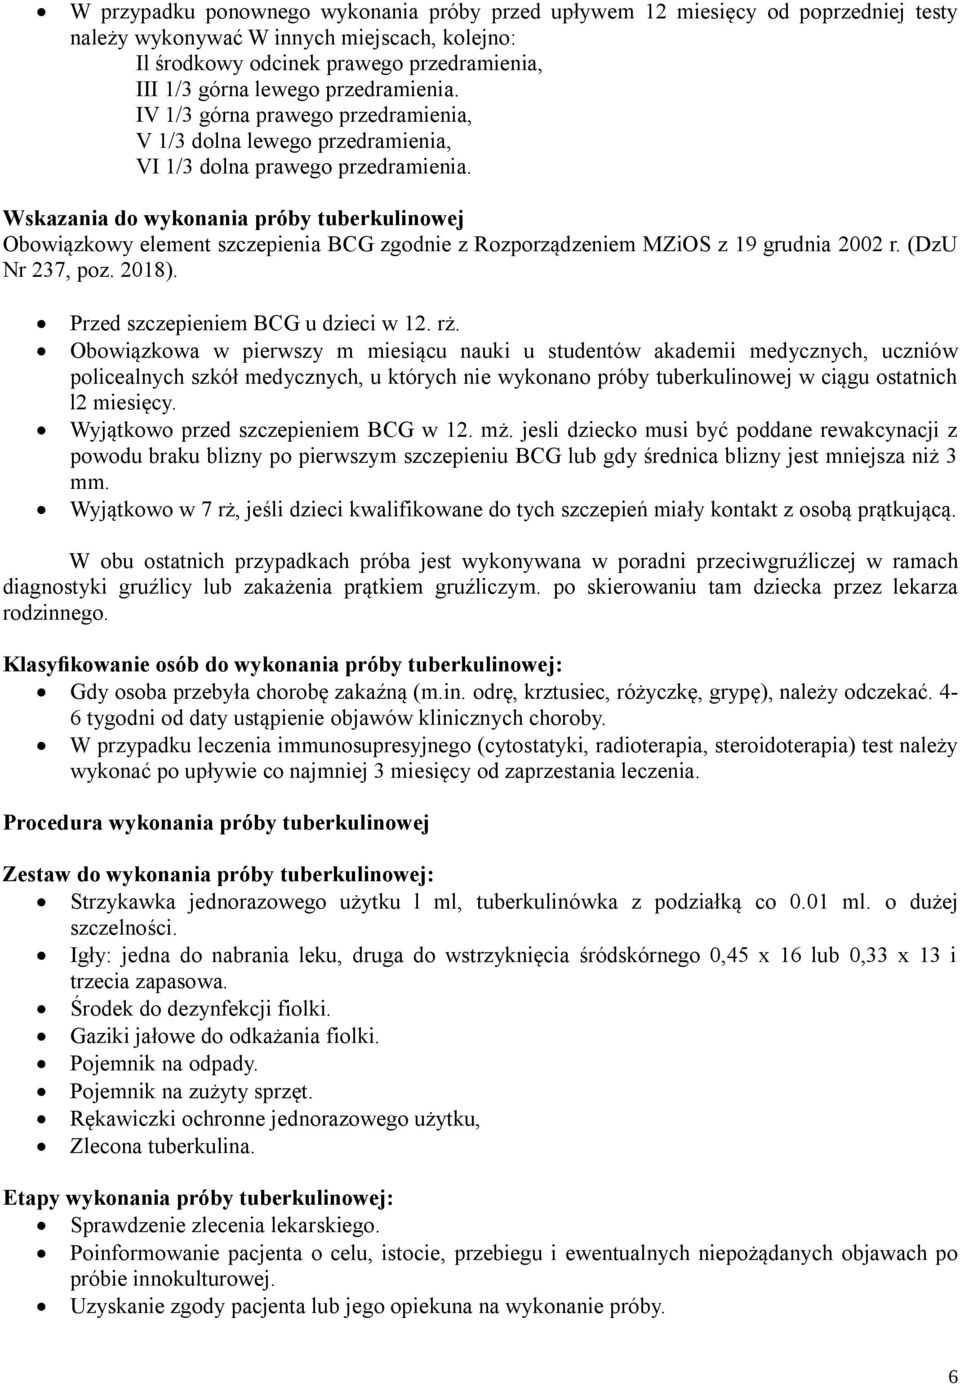 Wskazania do wykonania próby tuberkulinowej Obowiązkowy element szczepienia BCG zgodnie z Rozporządzeniem MZiOS z 19 grudnia 2002 r. (DzU Nr 237, poz. 2018). Przed szczepieniem BCG u dzieci w 12. rż.